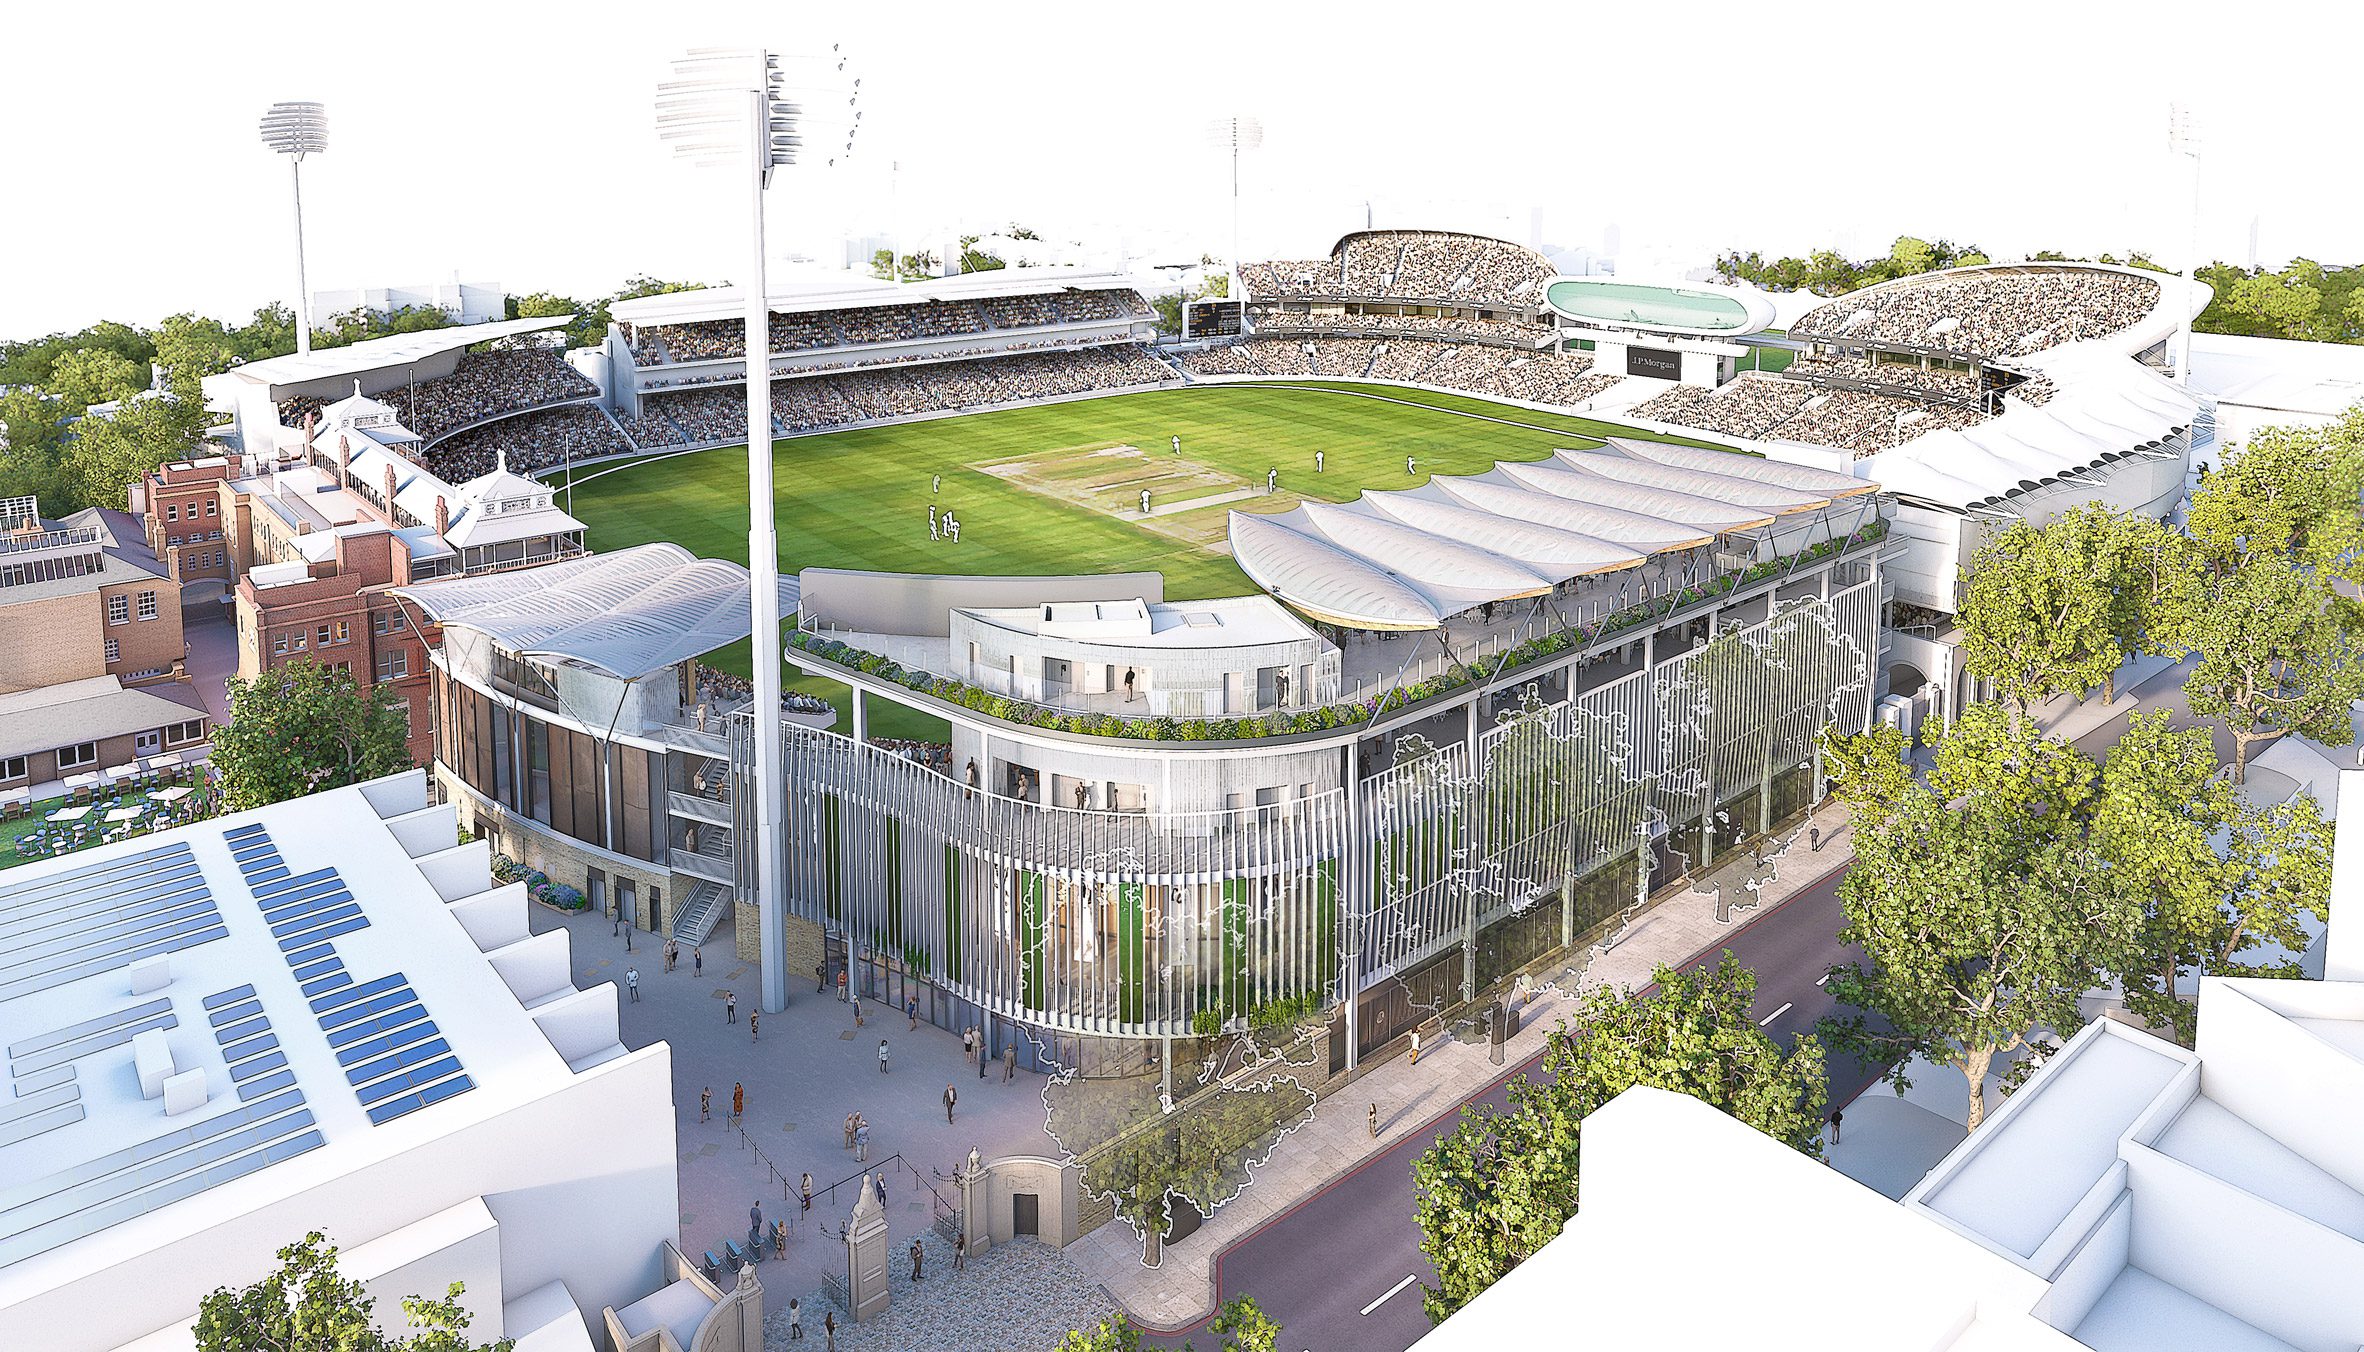 Rendered view of cricket ground redevelopment by WilkinsonEyre